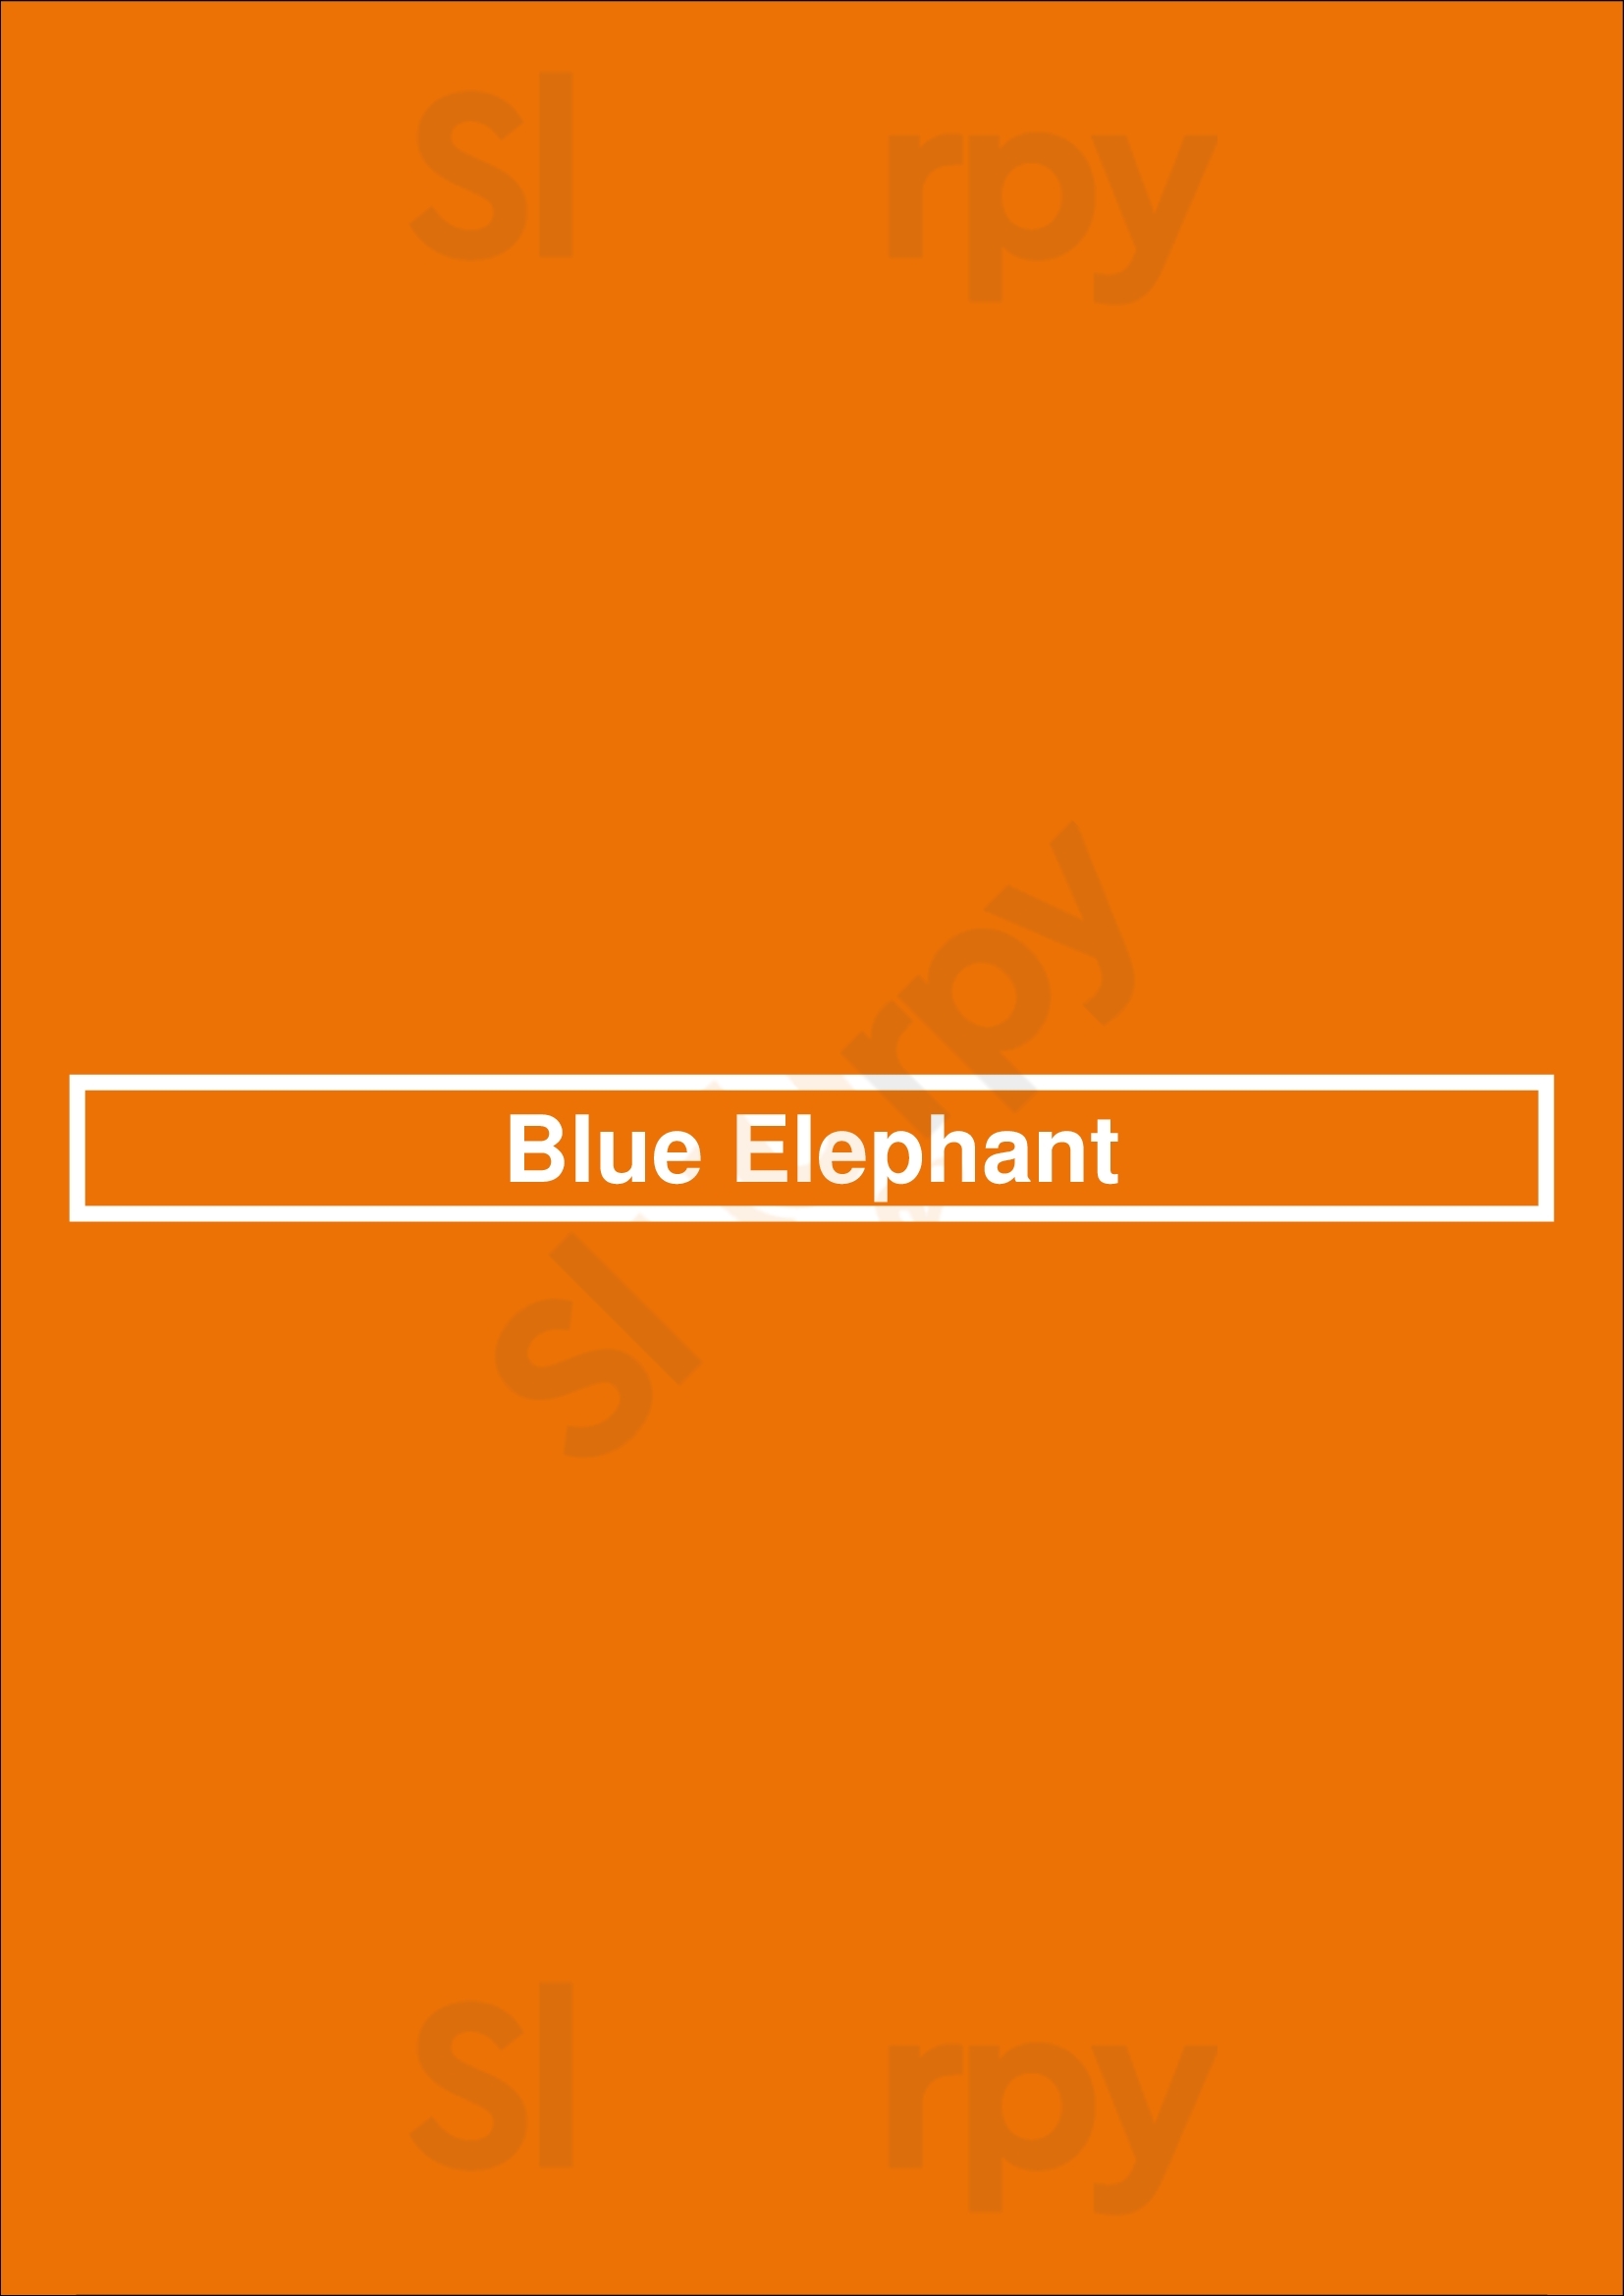 Blue Elephant Dublin Menu - 1